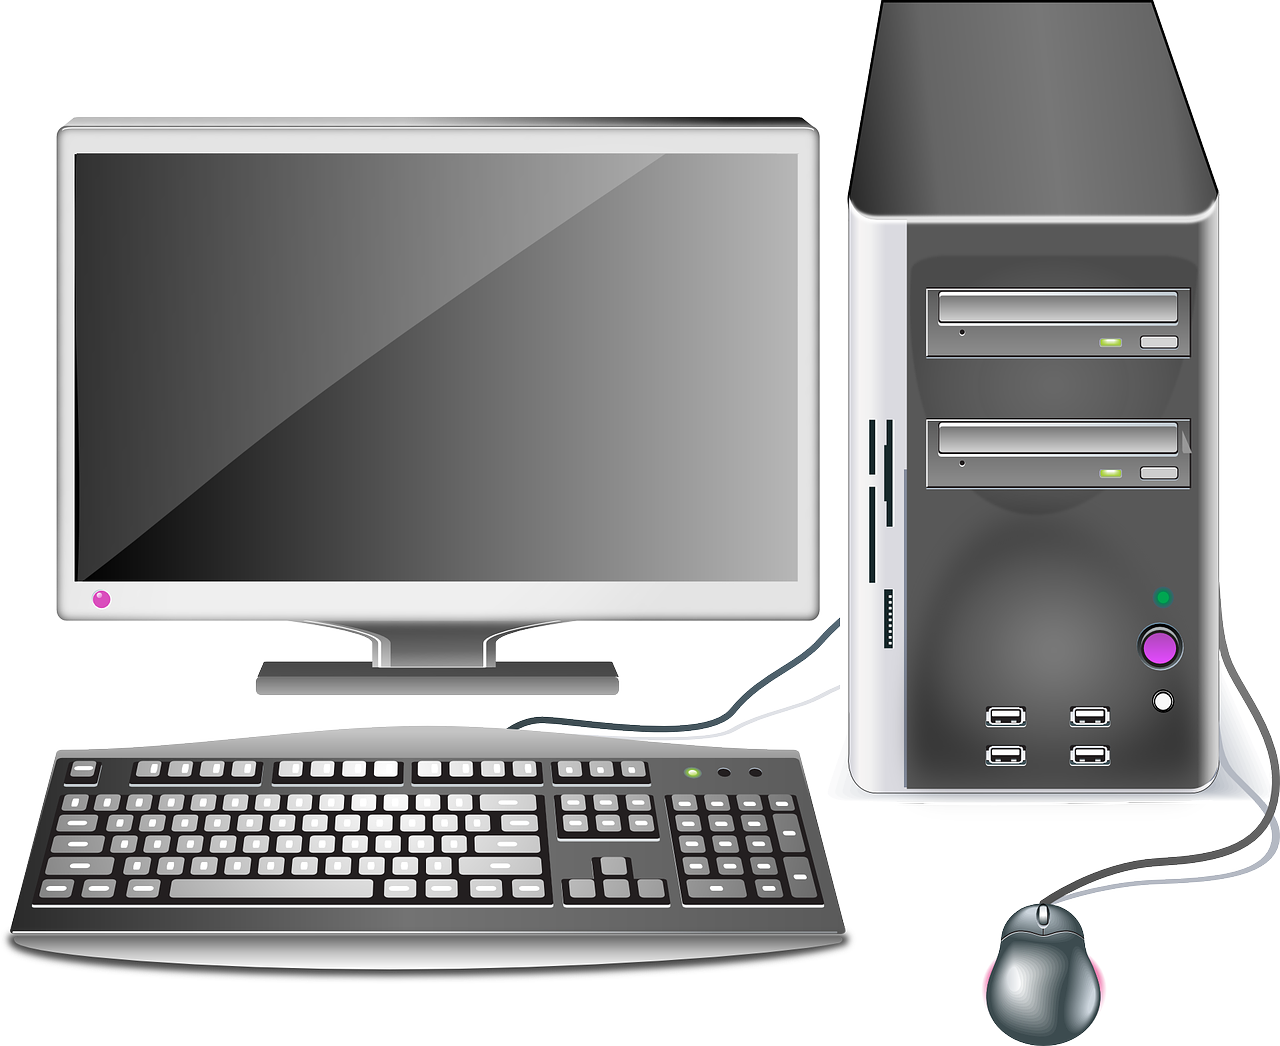 Clipart of desktop computer